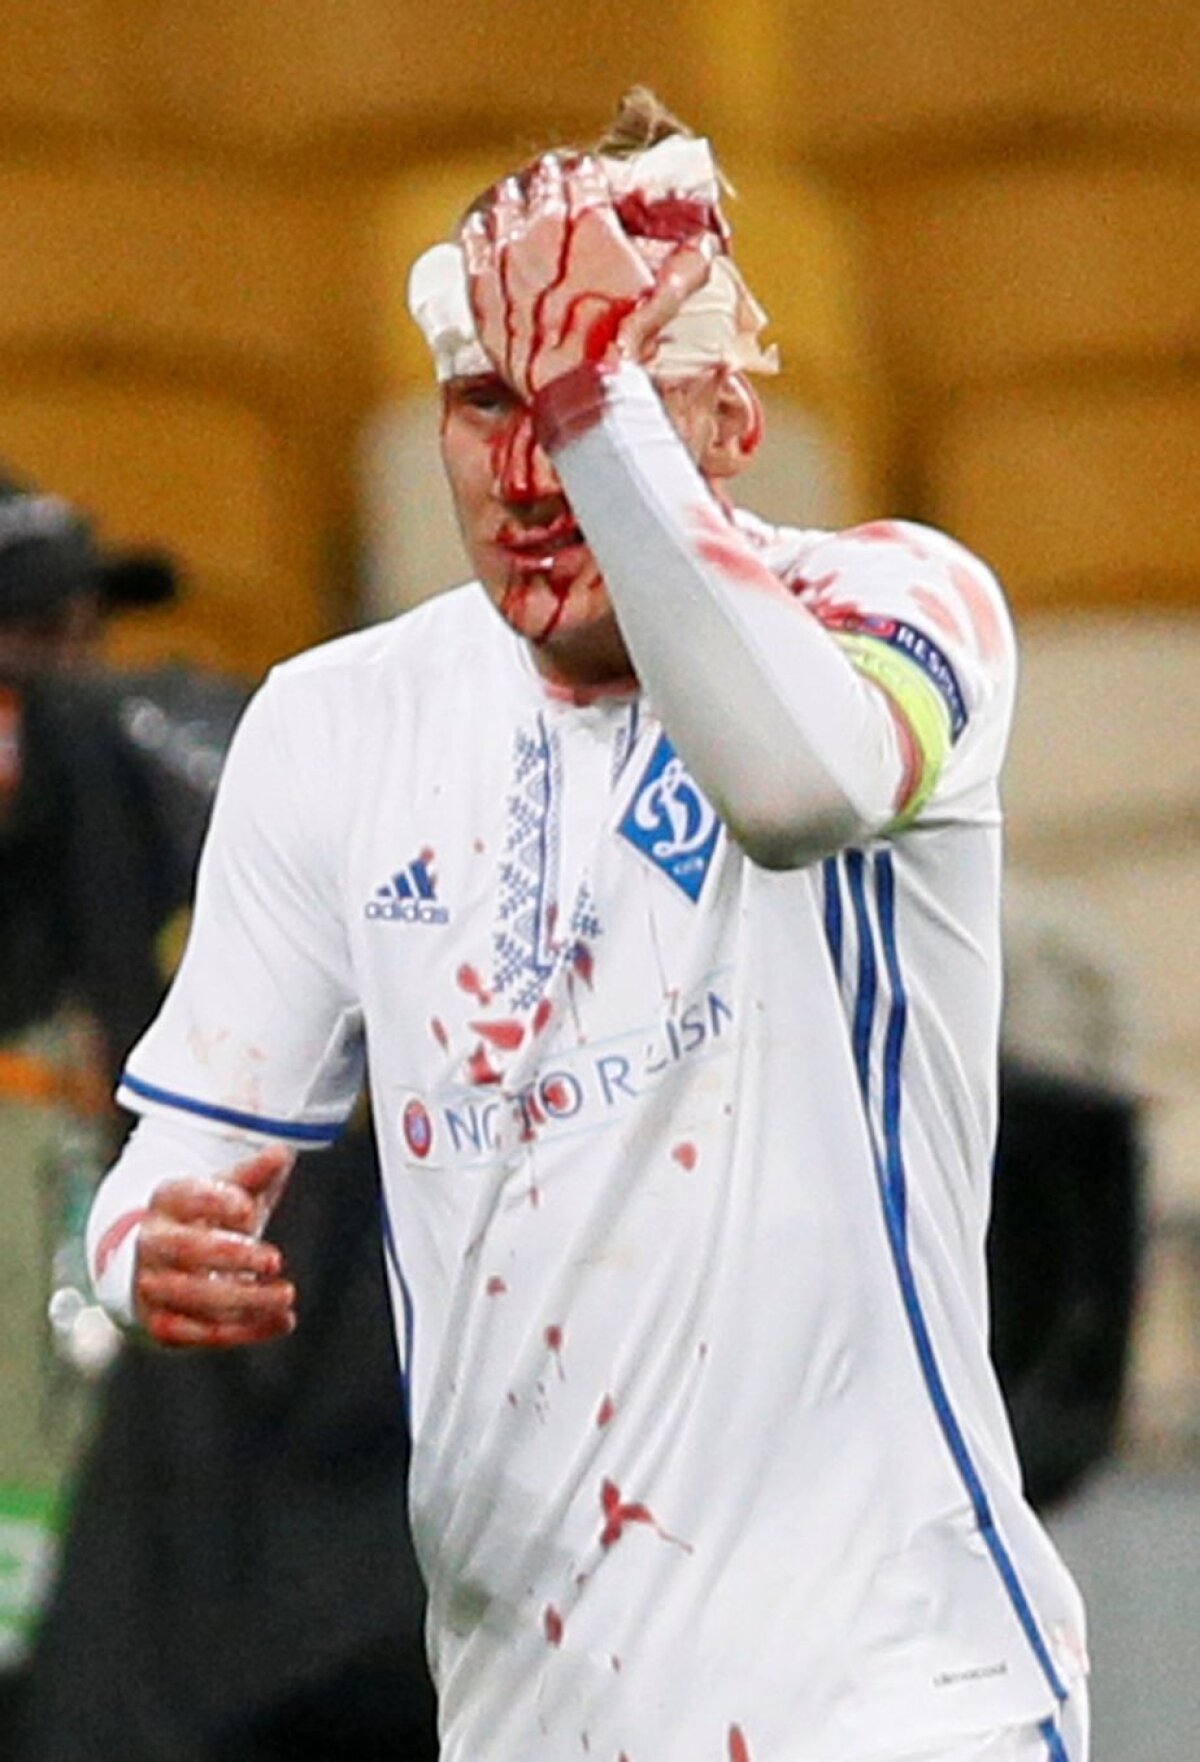 Acoperit cu sânge » Un jucător din Europa League a ieșit de pe teren ca după război